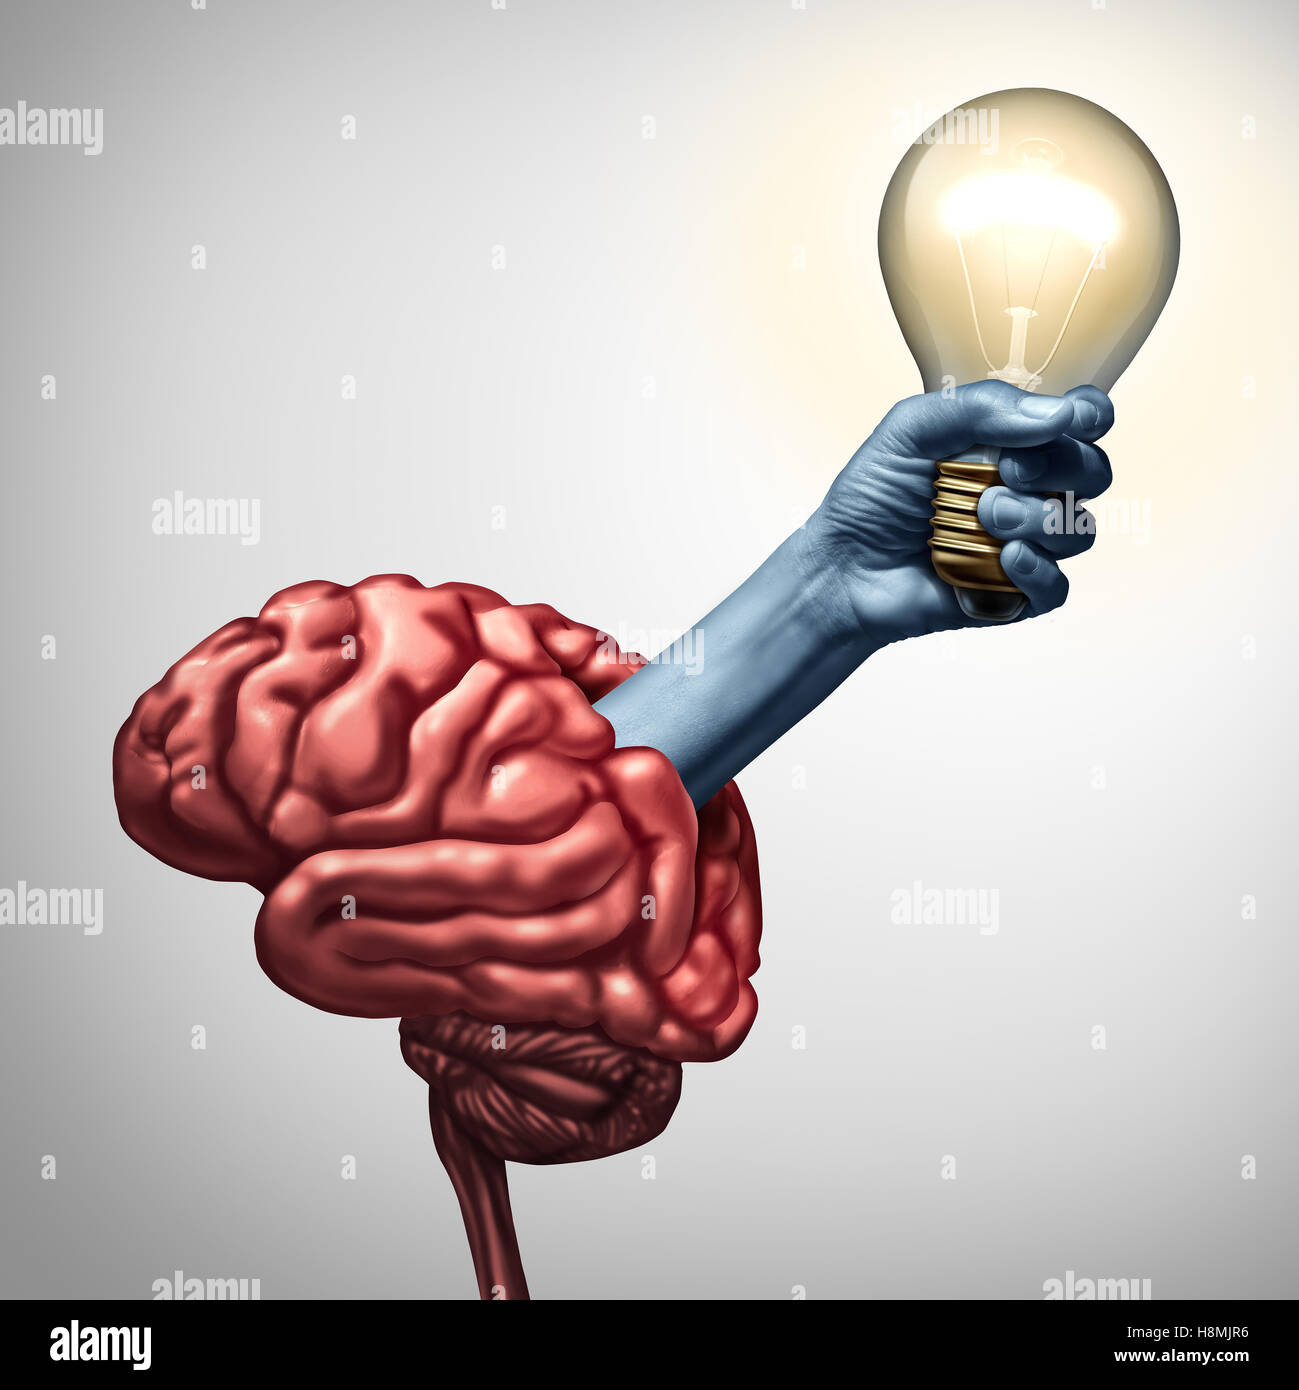 Trouvez l'inspiration concept comme un bras tenant une ampoule lumineuse émergeant d'un cerveau comme une métaphore de l'innovation pour la puissance des idées et inspiration créative avec succès 3D illustration éléments. Banque D'Images